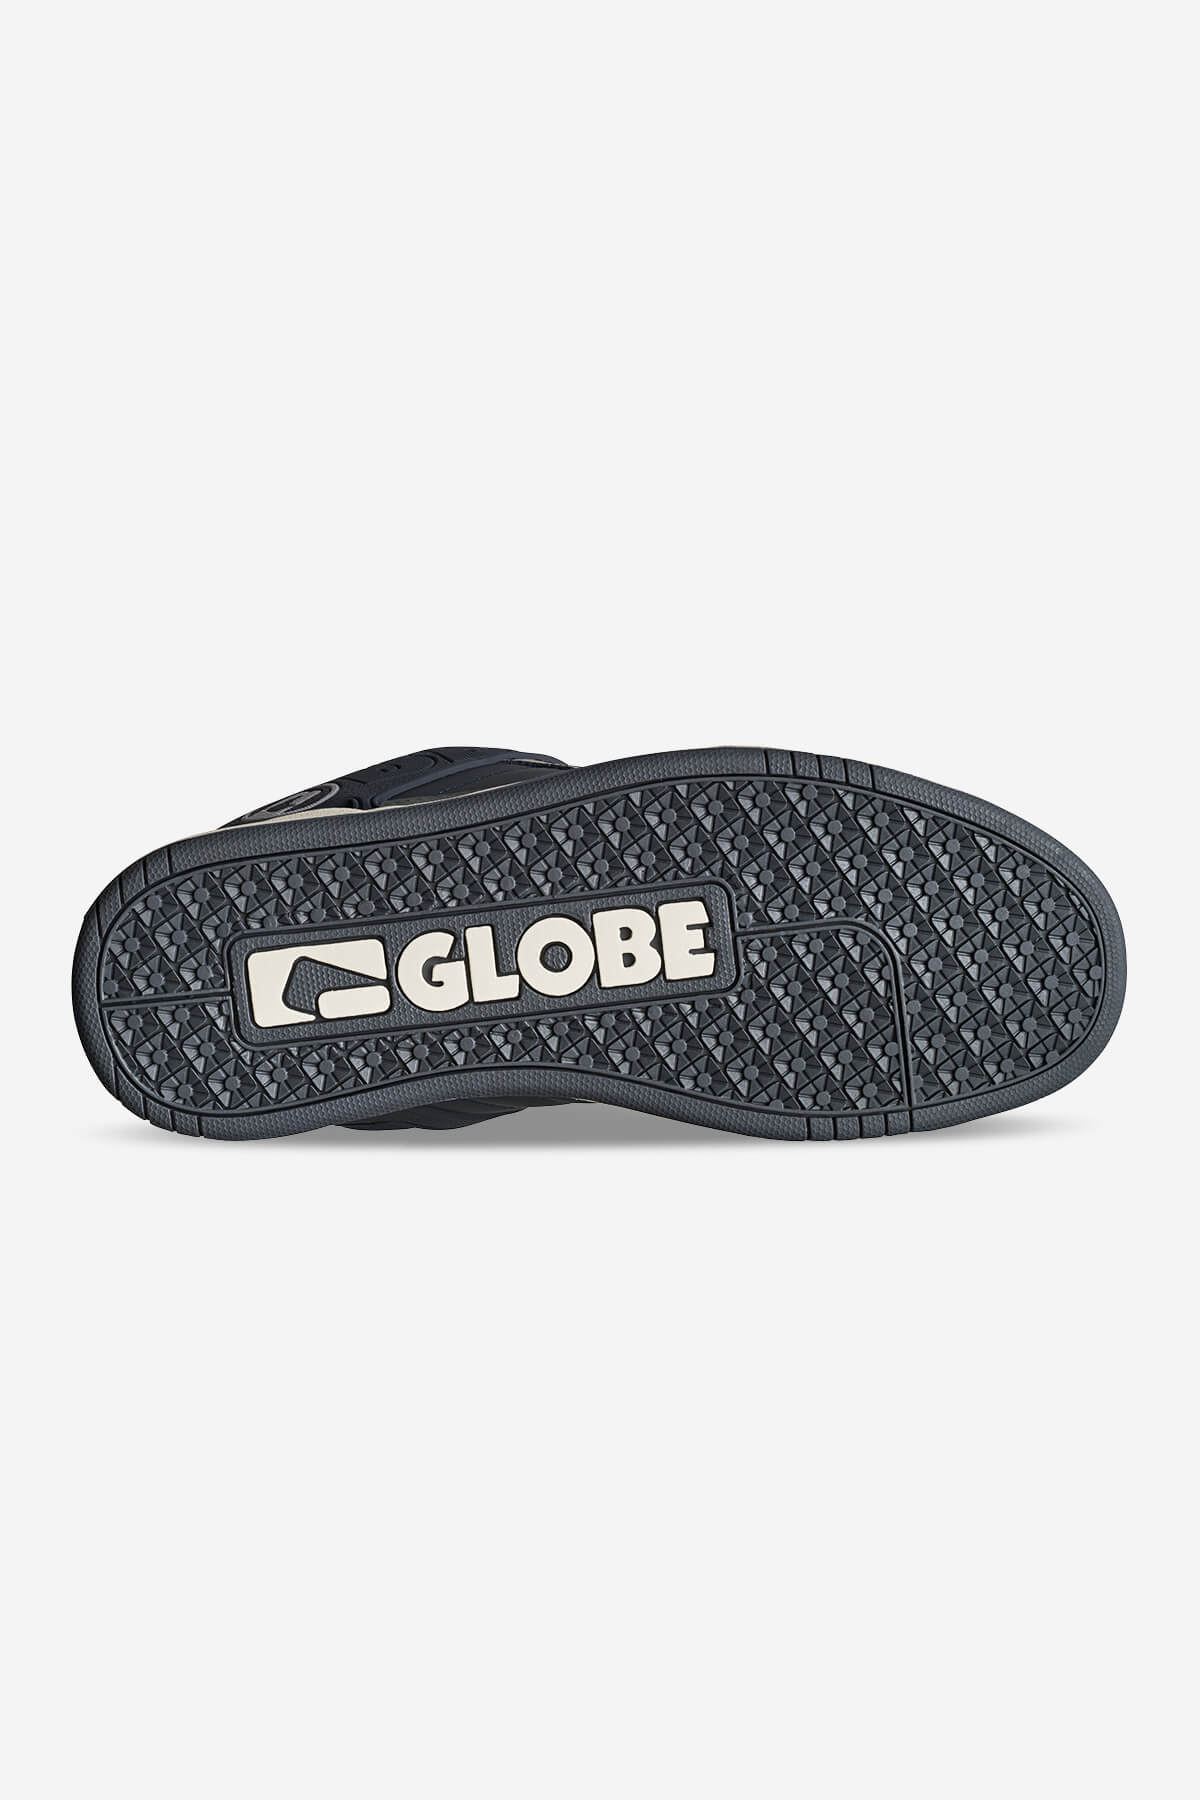 Globe - Tilt - Ebony/Charcoal - skateboard Schoenen